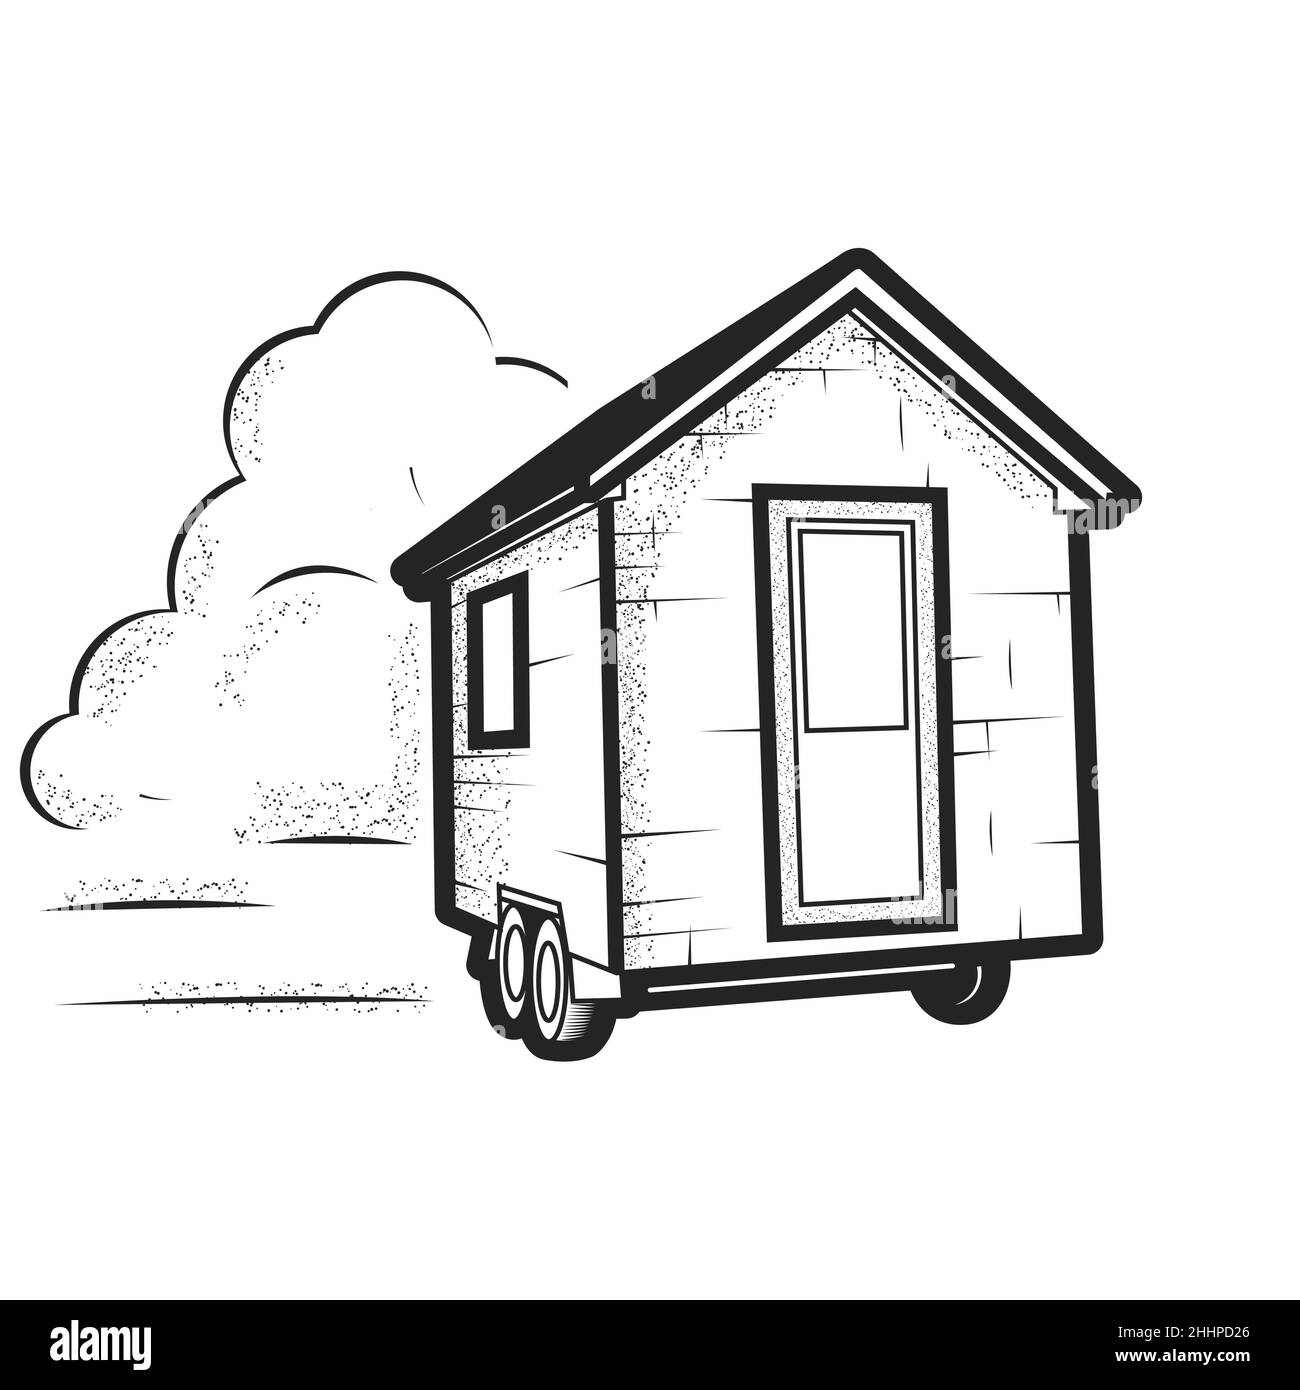 Petite maison minuscule sur roues, cabane de remorque, cabane de petite taille à roues, vecteur Illustration de Vecteur